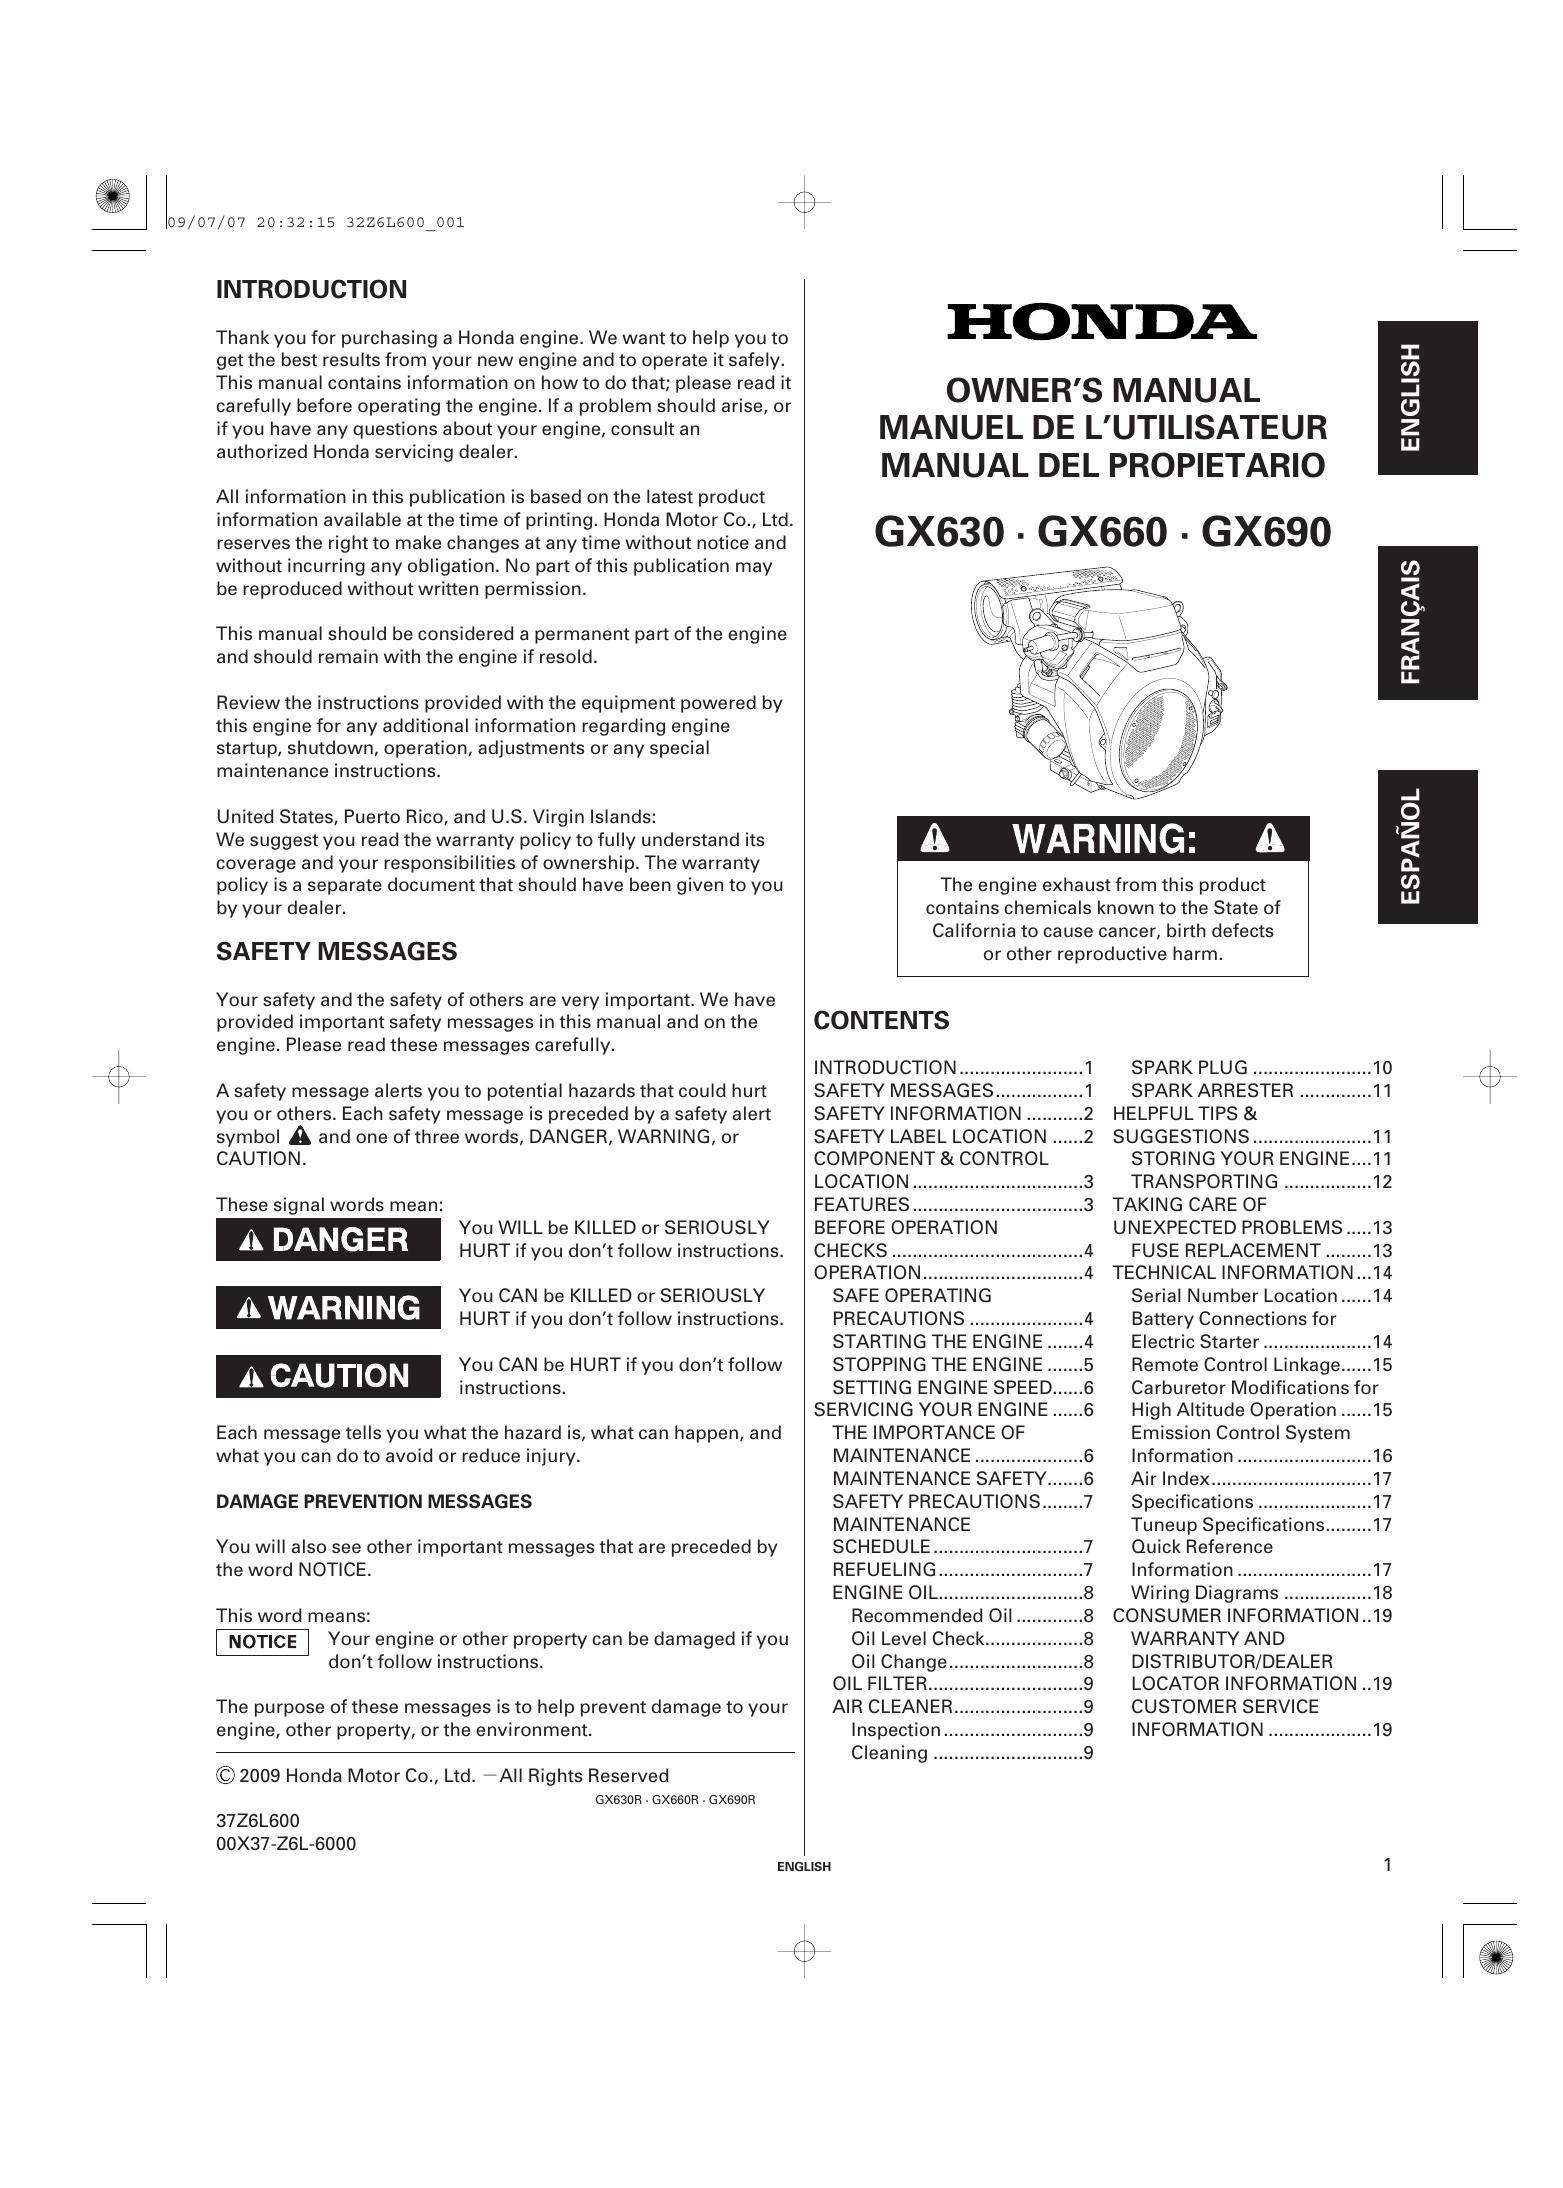 honda-owners-manual-for-engines-gx630-gx660-gx690.pdf